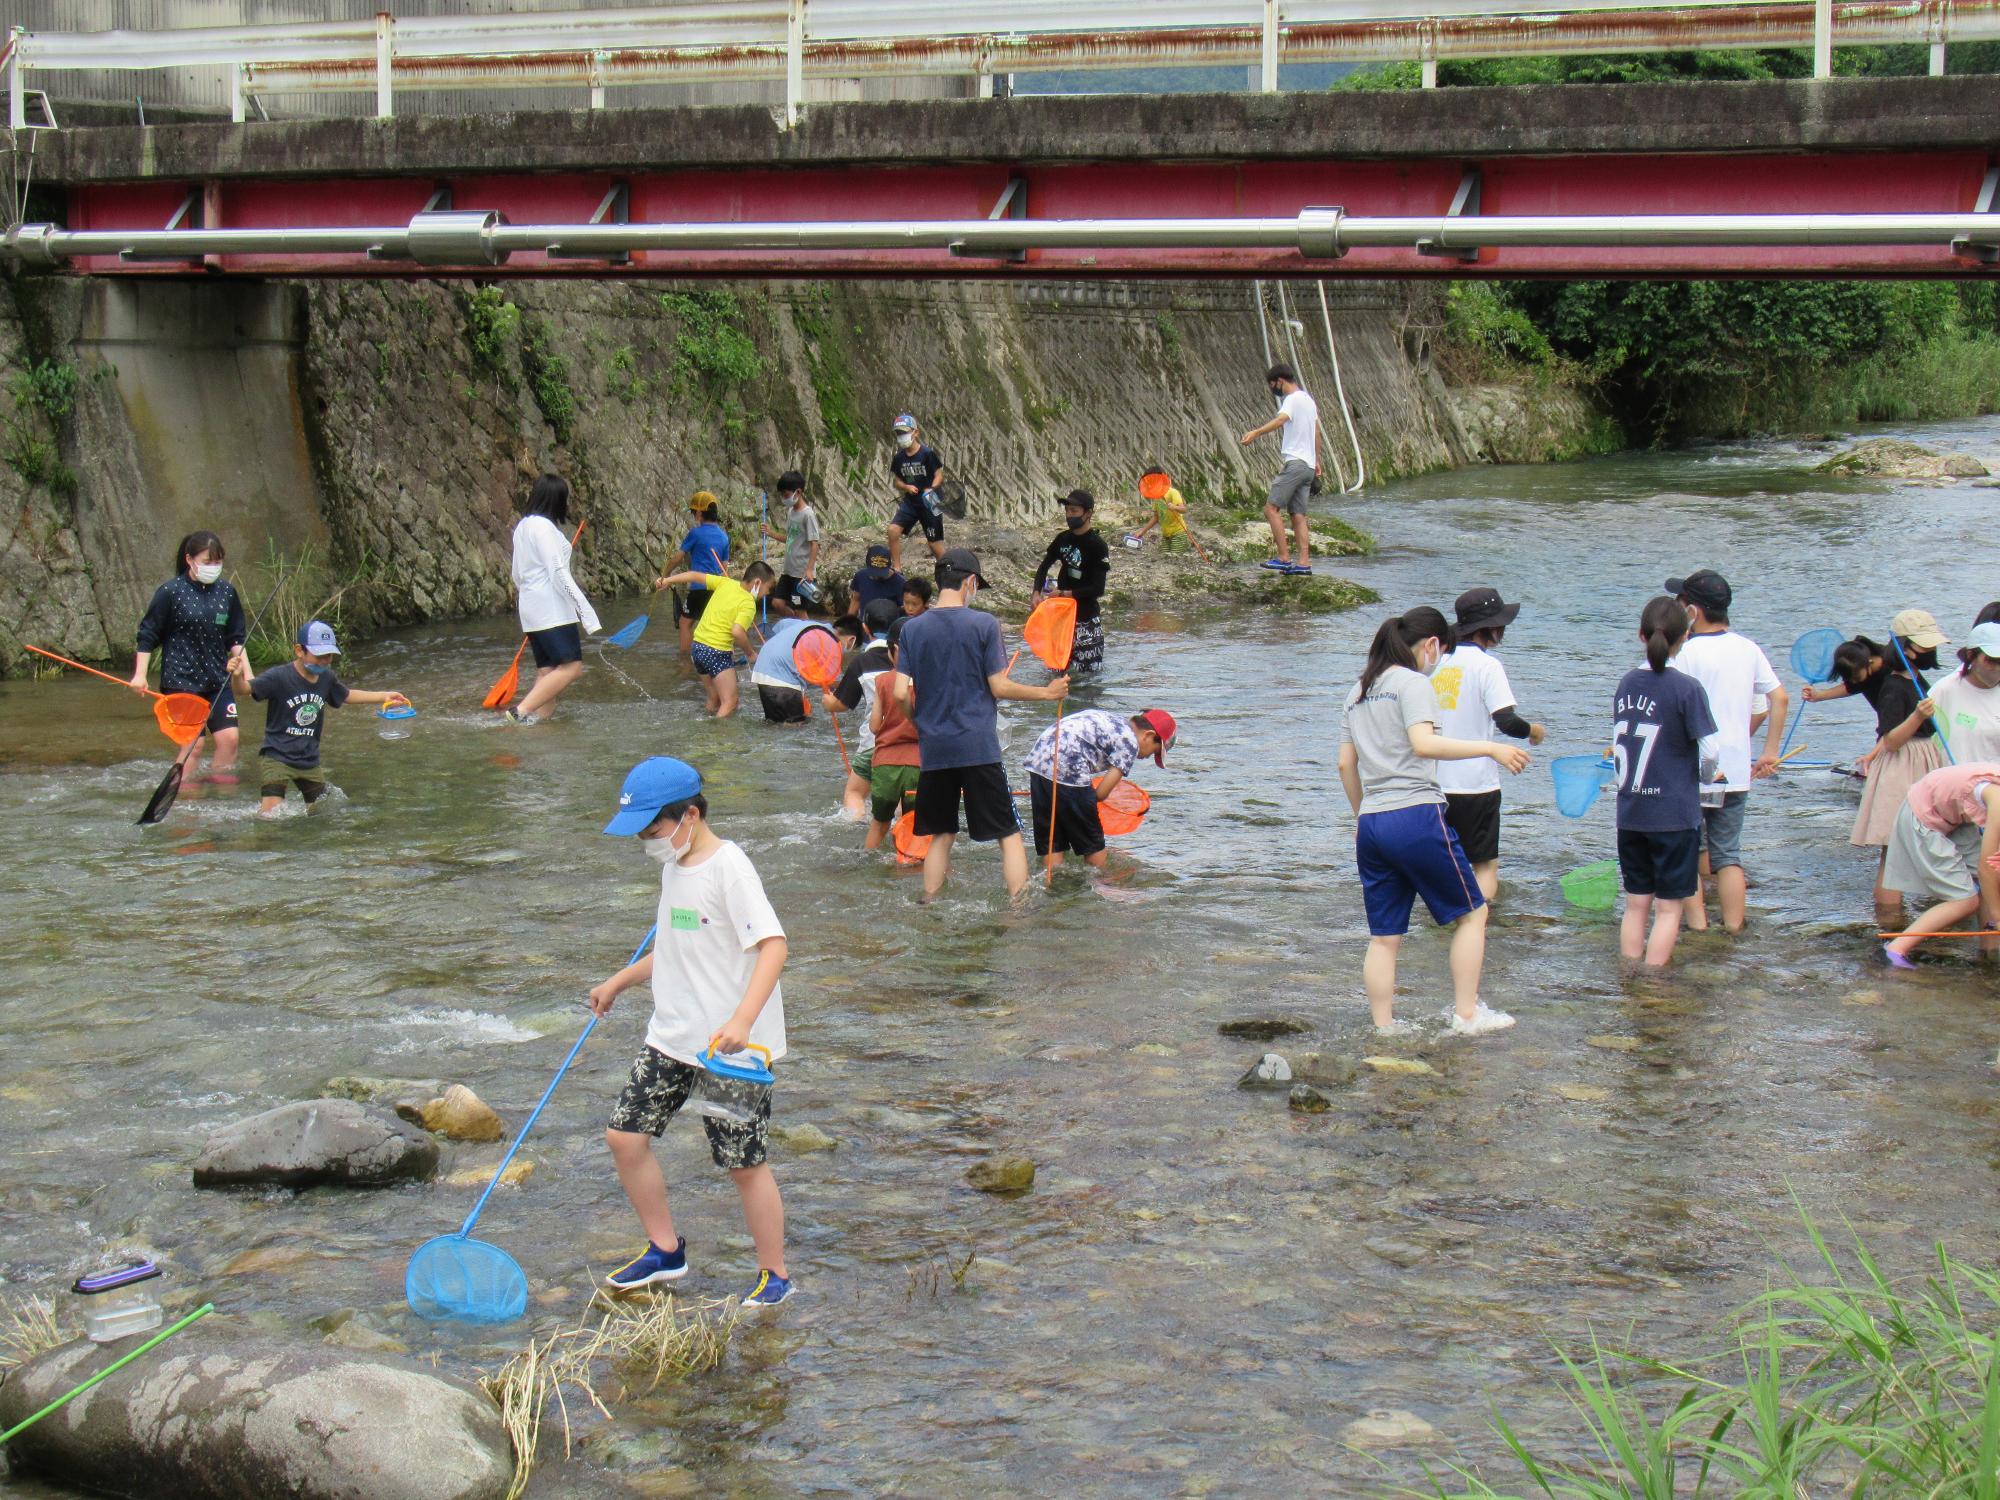 伊沢川で生き物さがしを楽しむ子どもとサポーターの写真